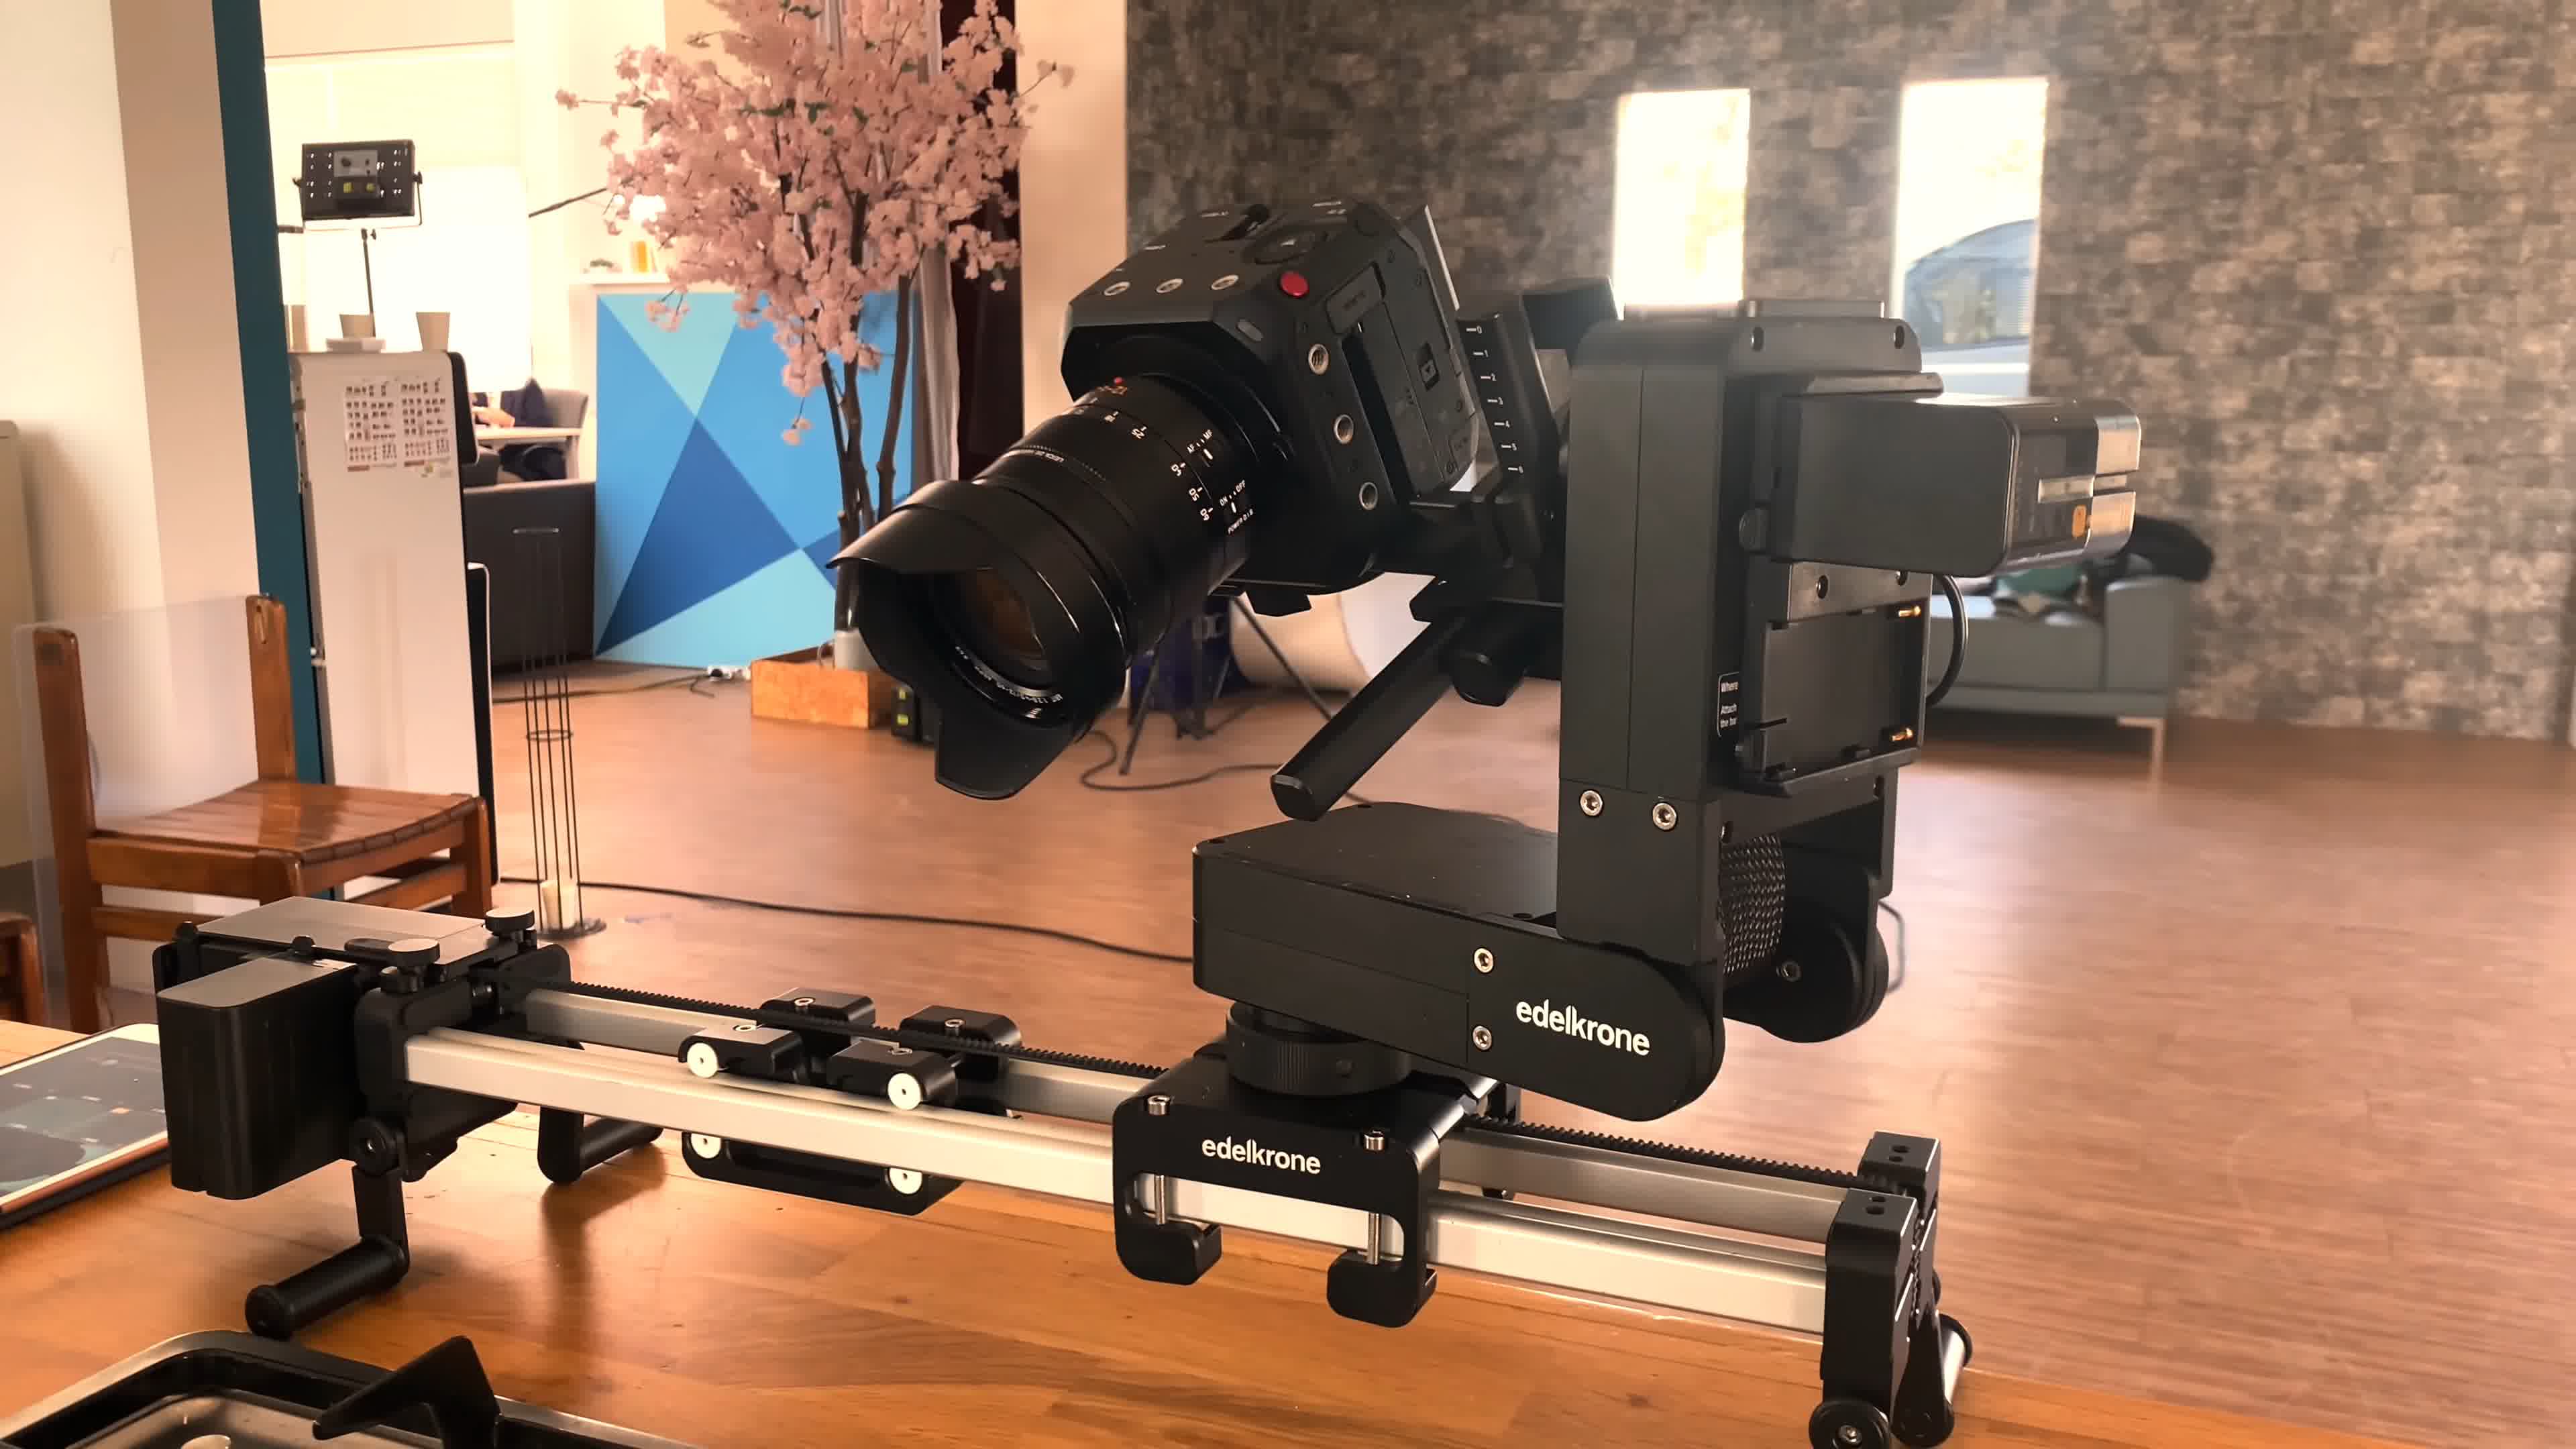 索尼4K摄像机AX700 专注企业视频直播-影像中国网-中国摄影家协会主办